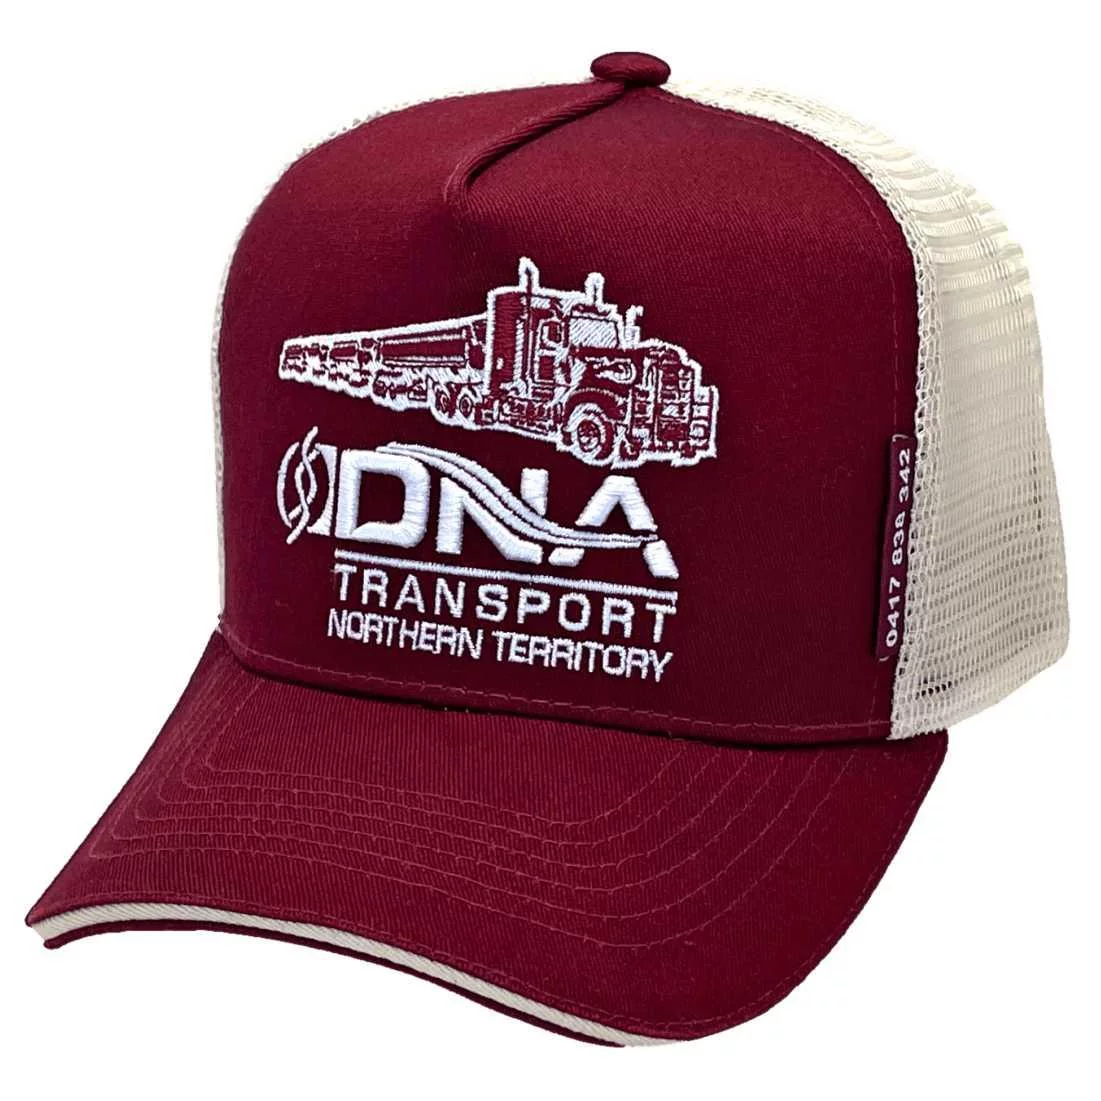 DNA Transport Darwin NT HP Original Basic Aussie Trucker Hat with Australian Head Fit Crown Maroon White